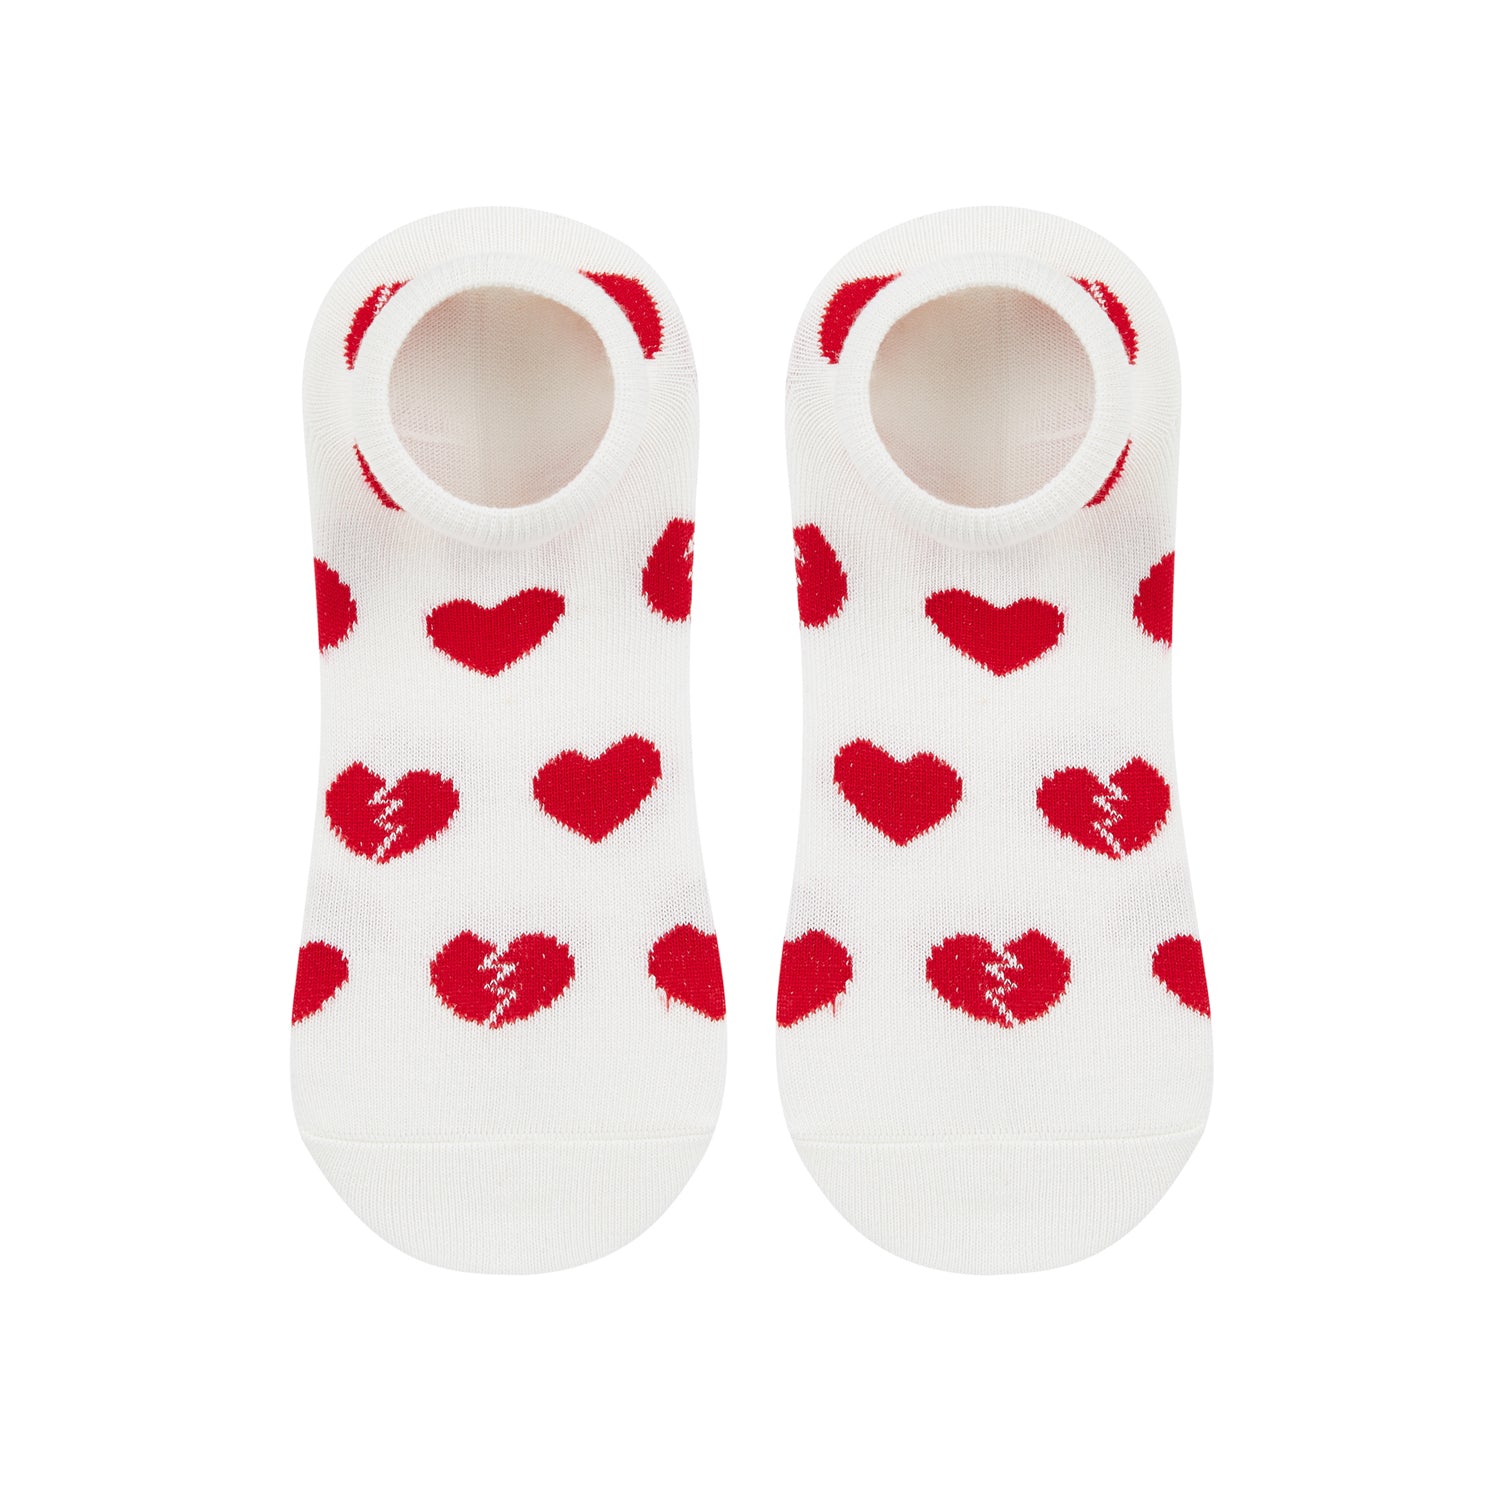 Heartbreak Printed Ankle Socks - IDENTITY Apparel Shop